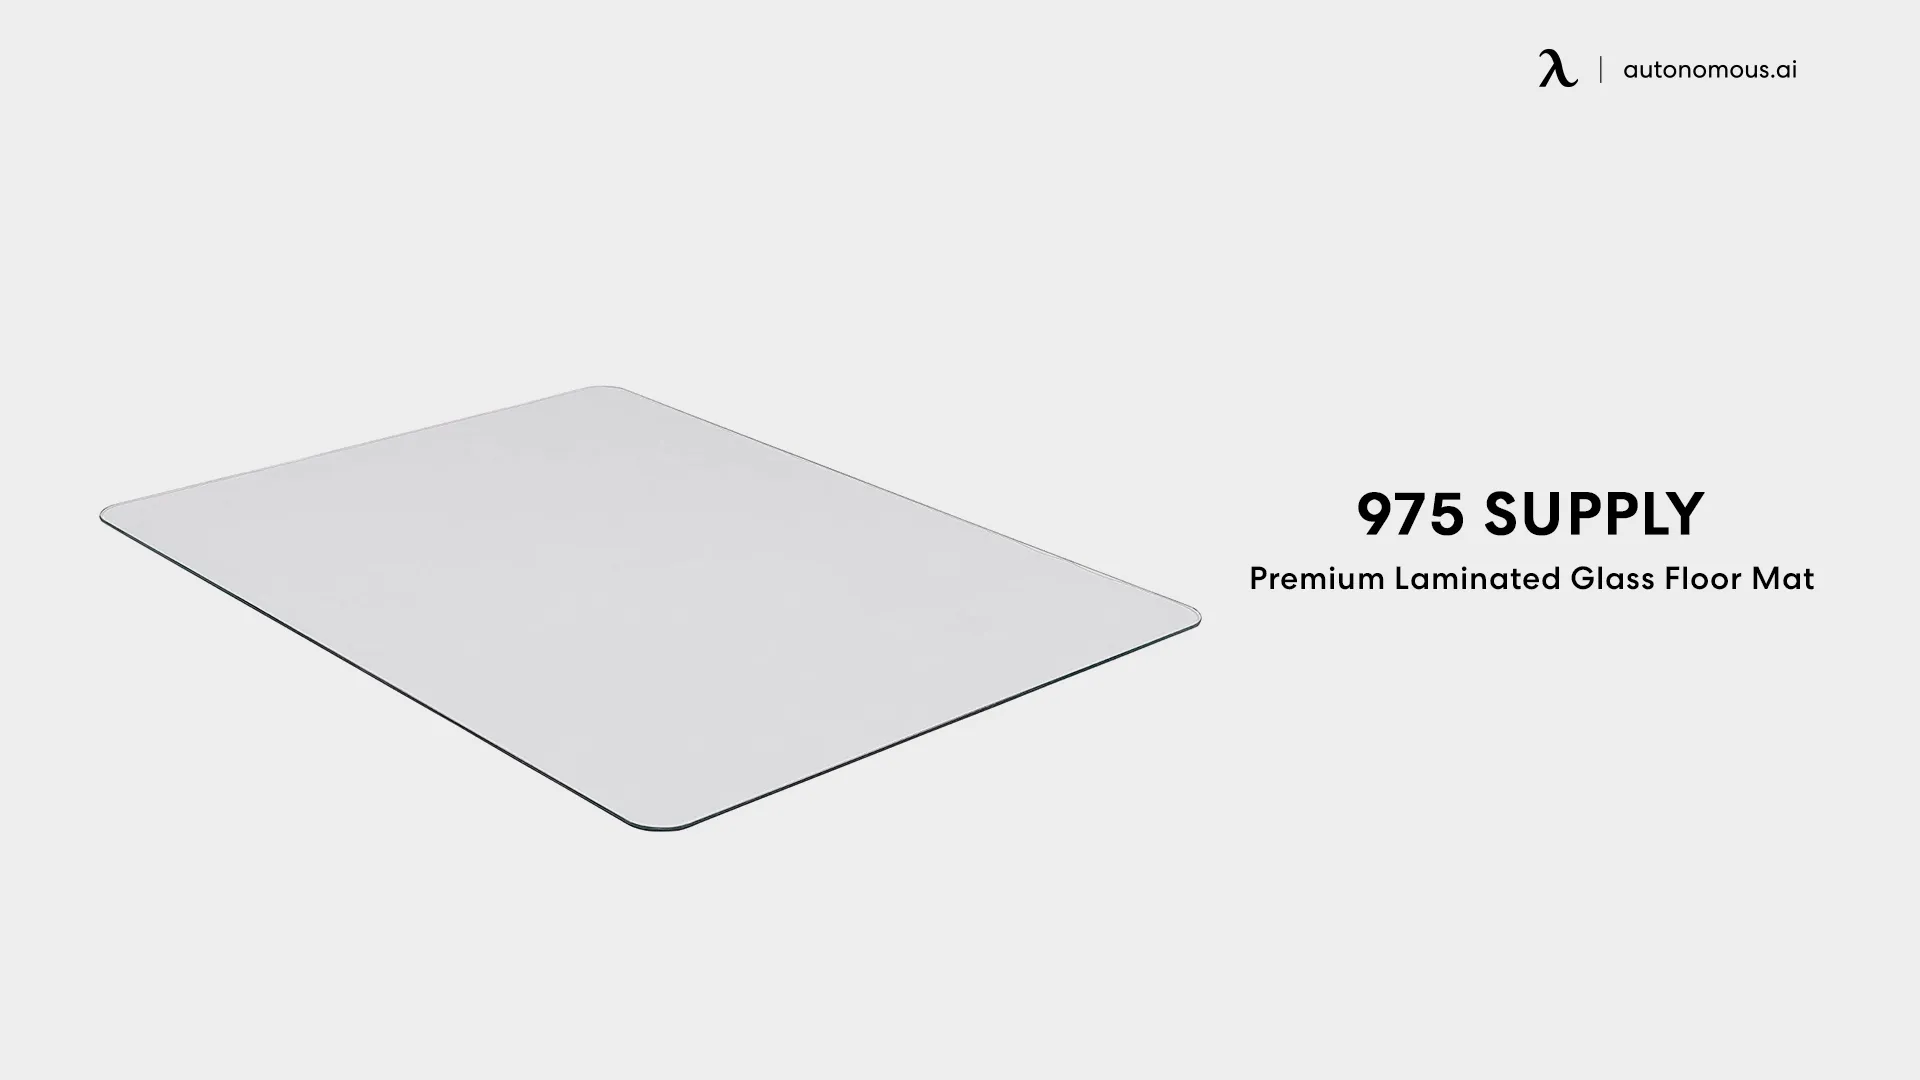 Premium Laminated Glass Floor Mat (975 Supply)